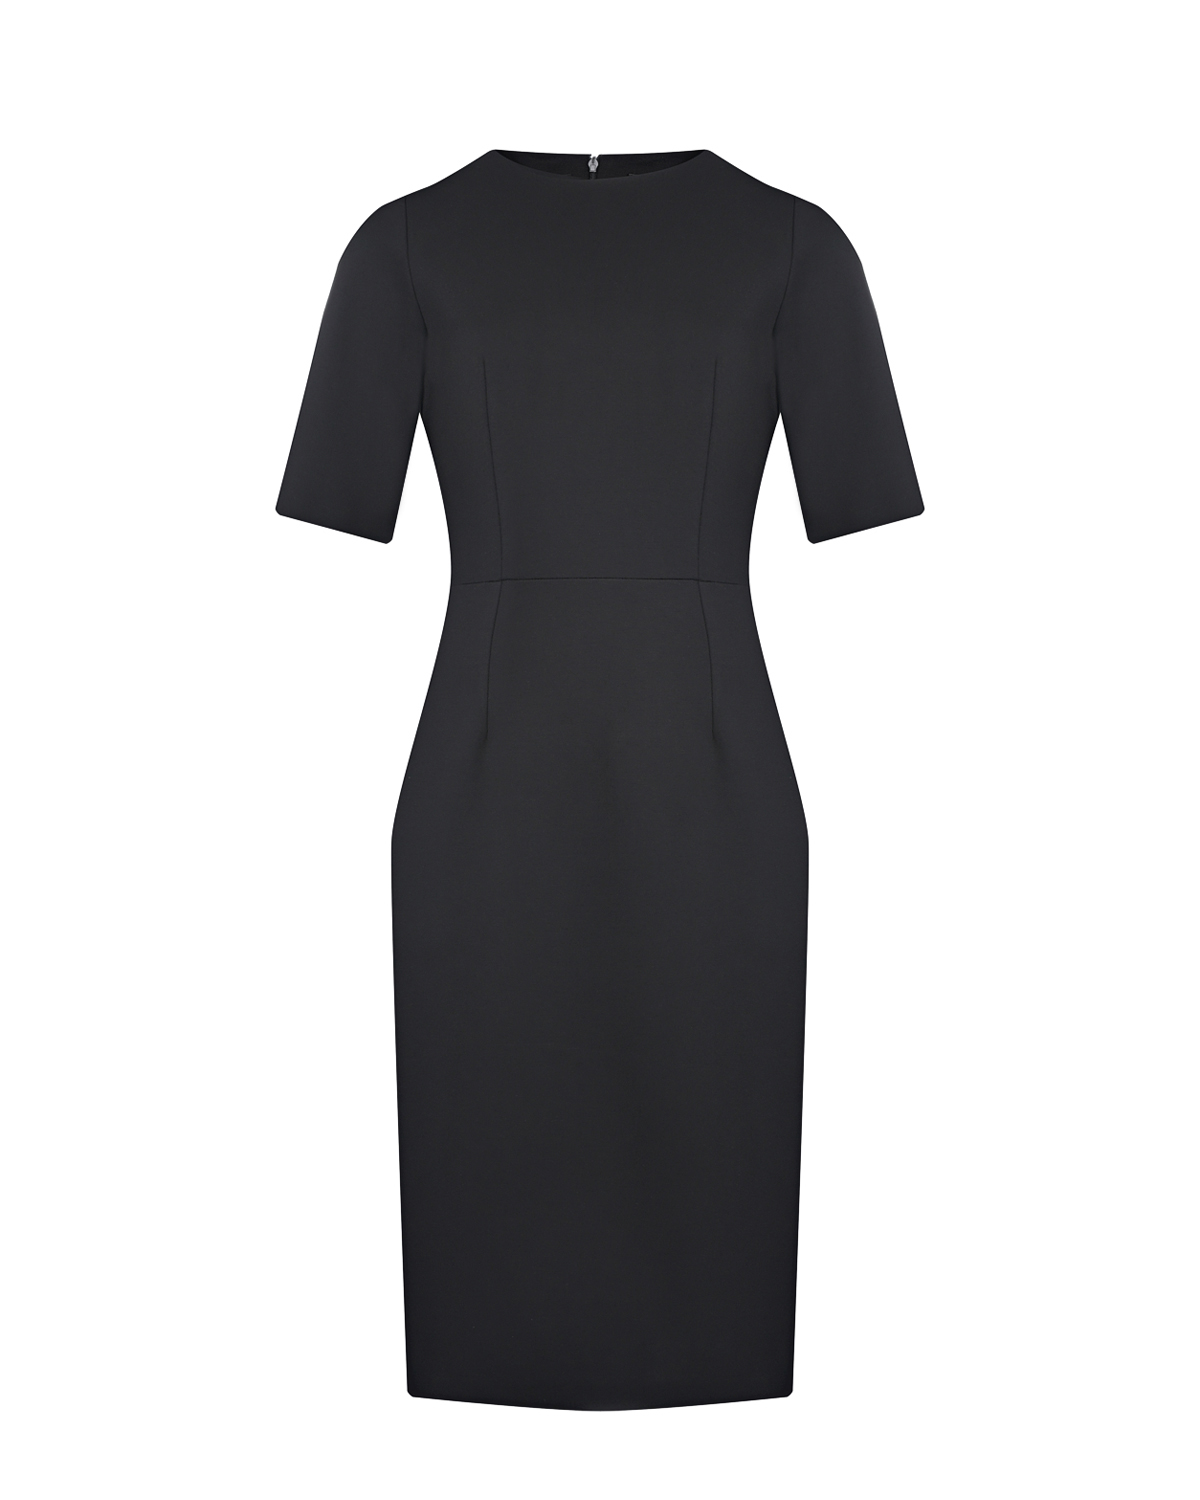 Трикотажное черное платье-футляр Dan Maralex, размер 42, цвет черный - фото 1